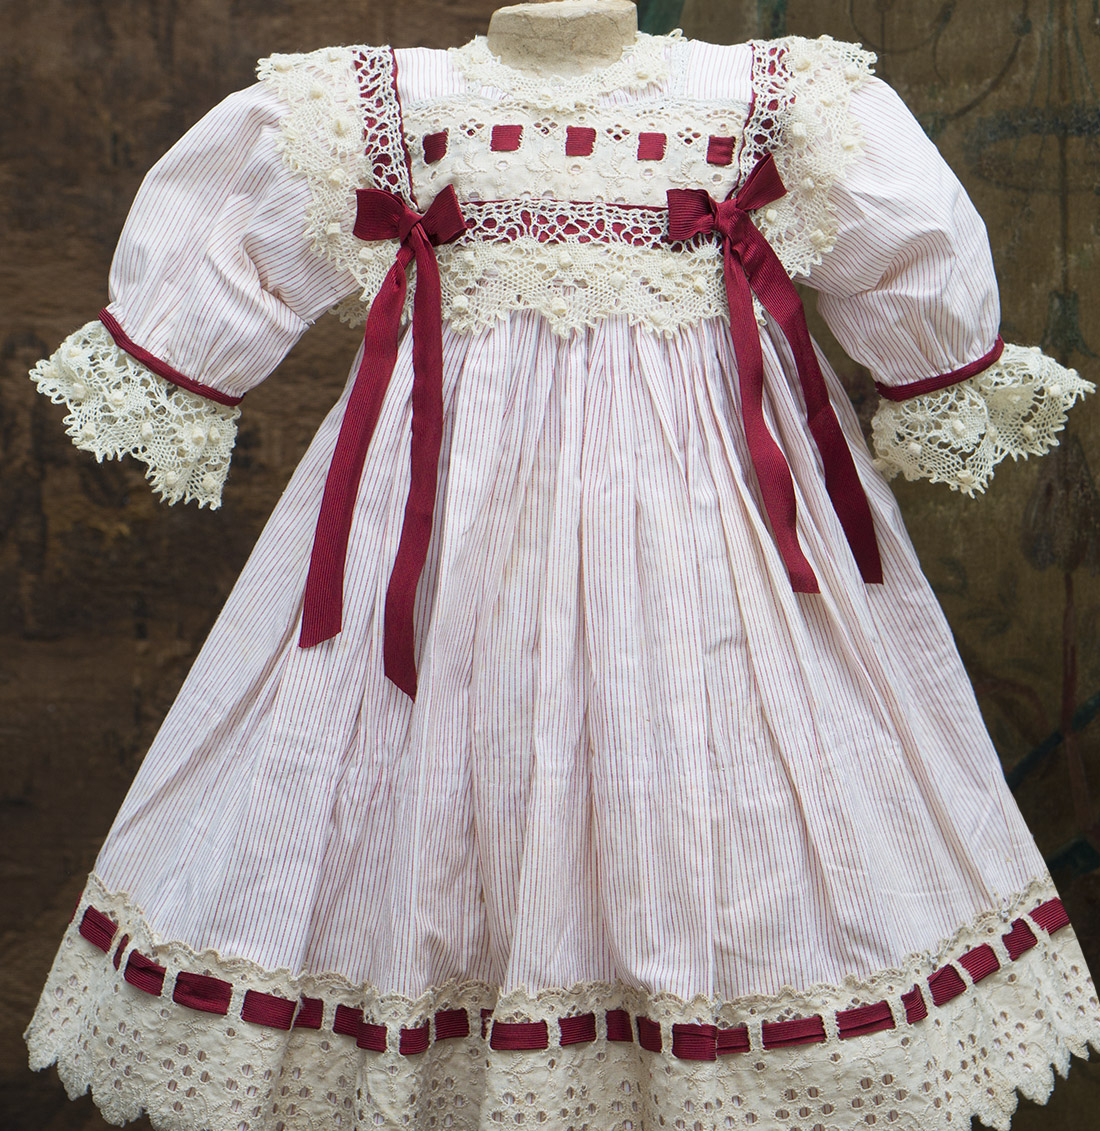 Antique Cotton Dress